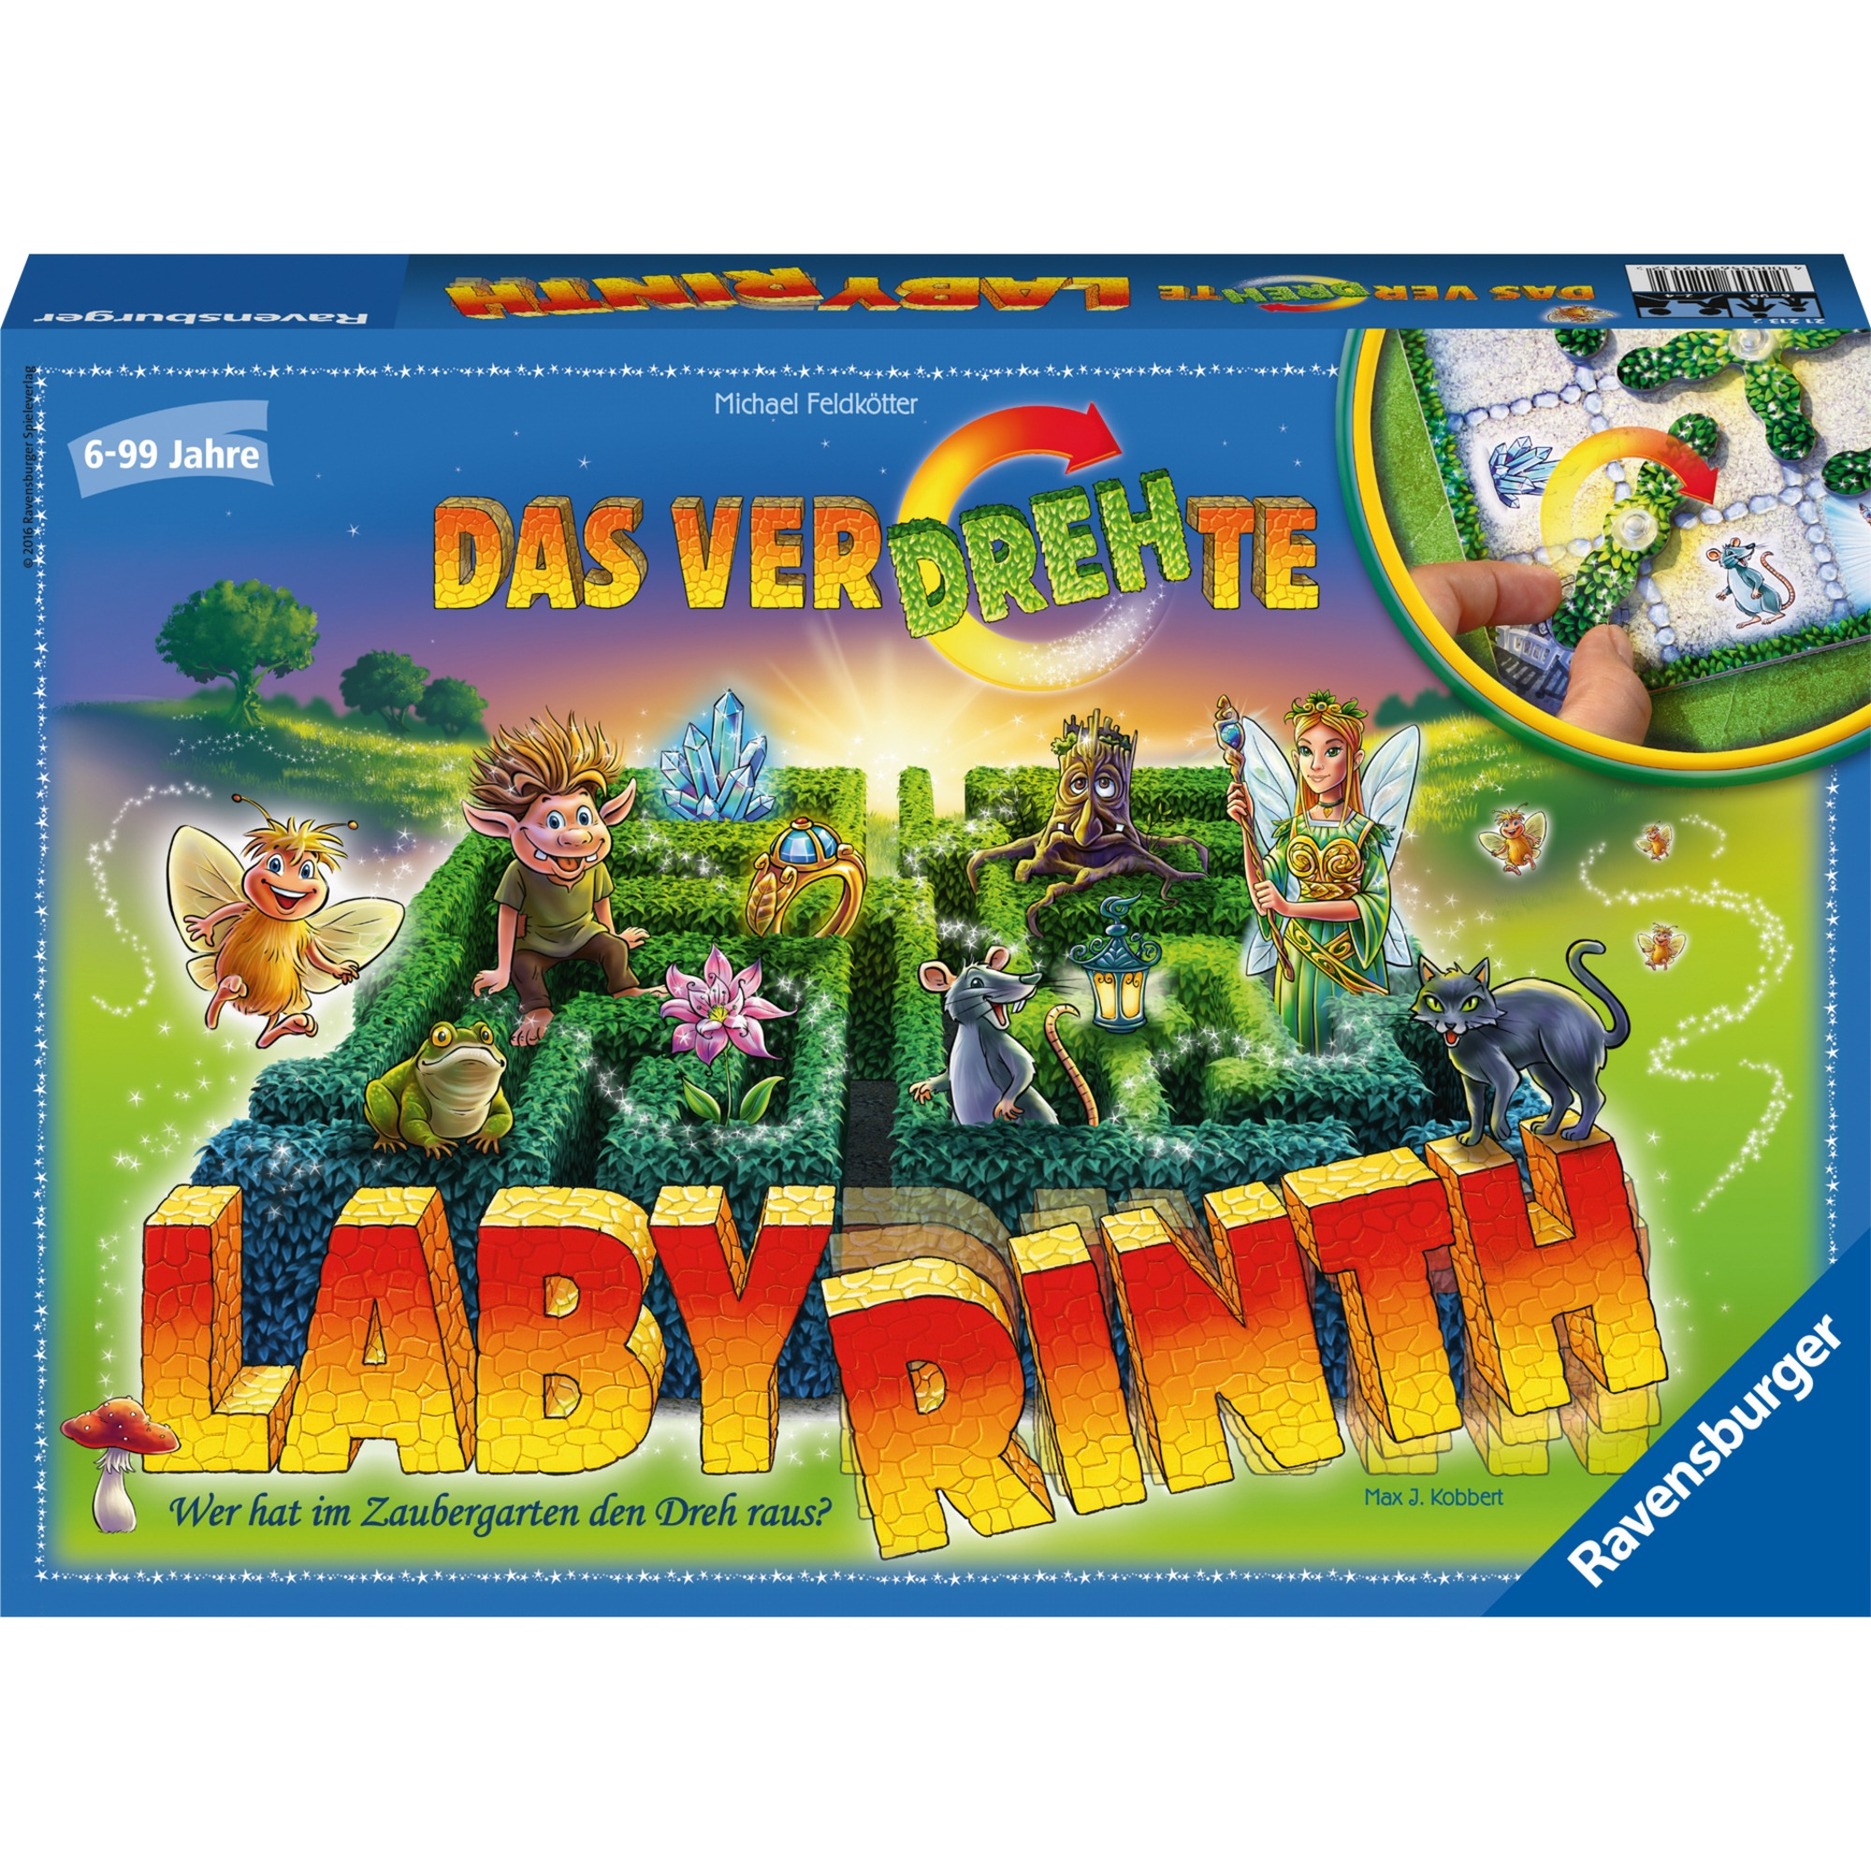 Spielzeug: Ravensburger Das verdrehte Labyrinth, Brettspiel